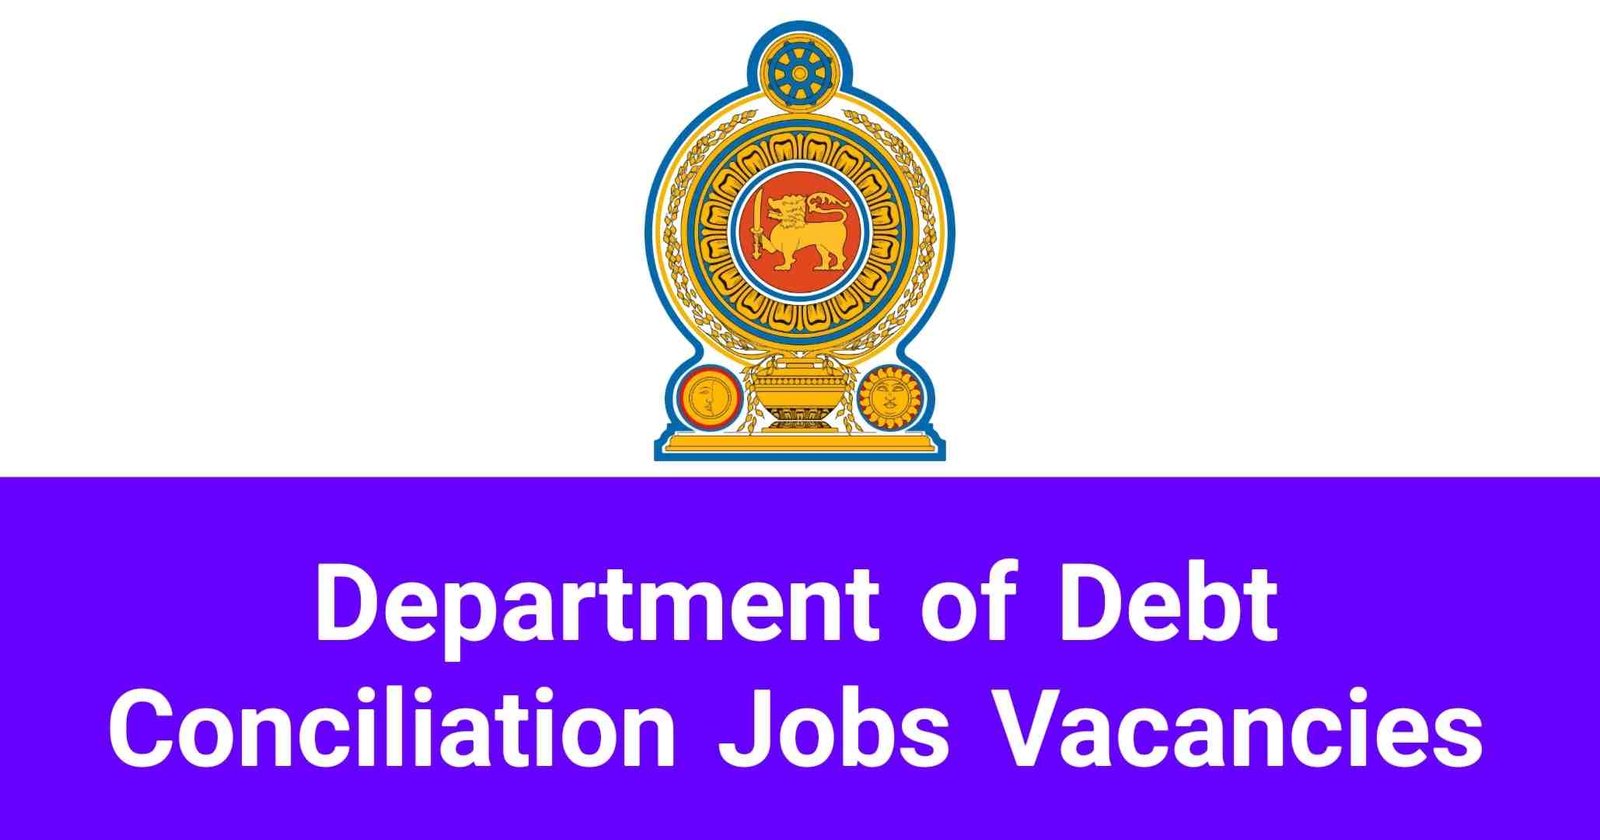 Department of Debt Conciliation Jobs Vacancies